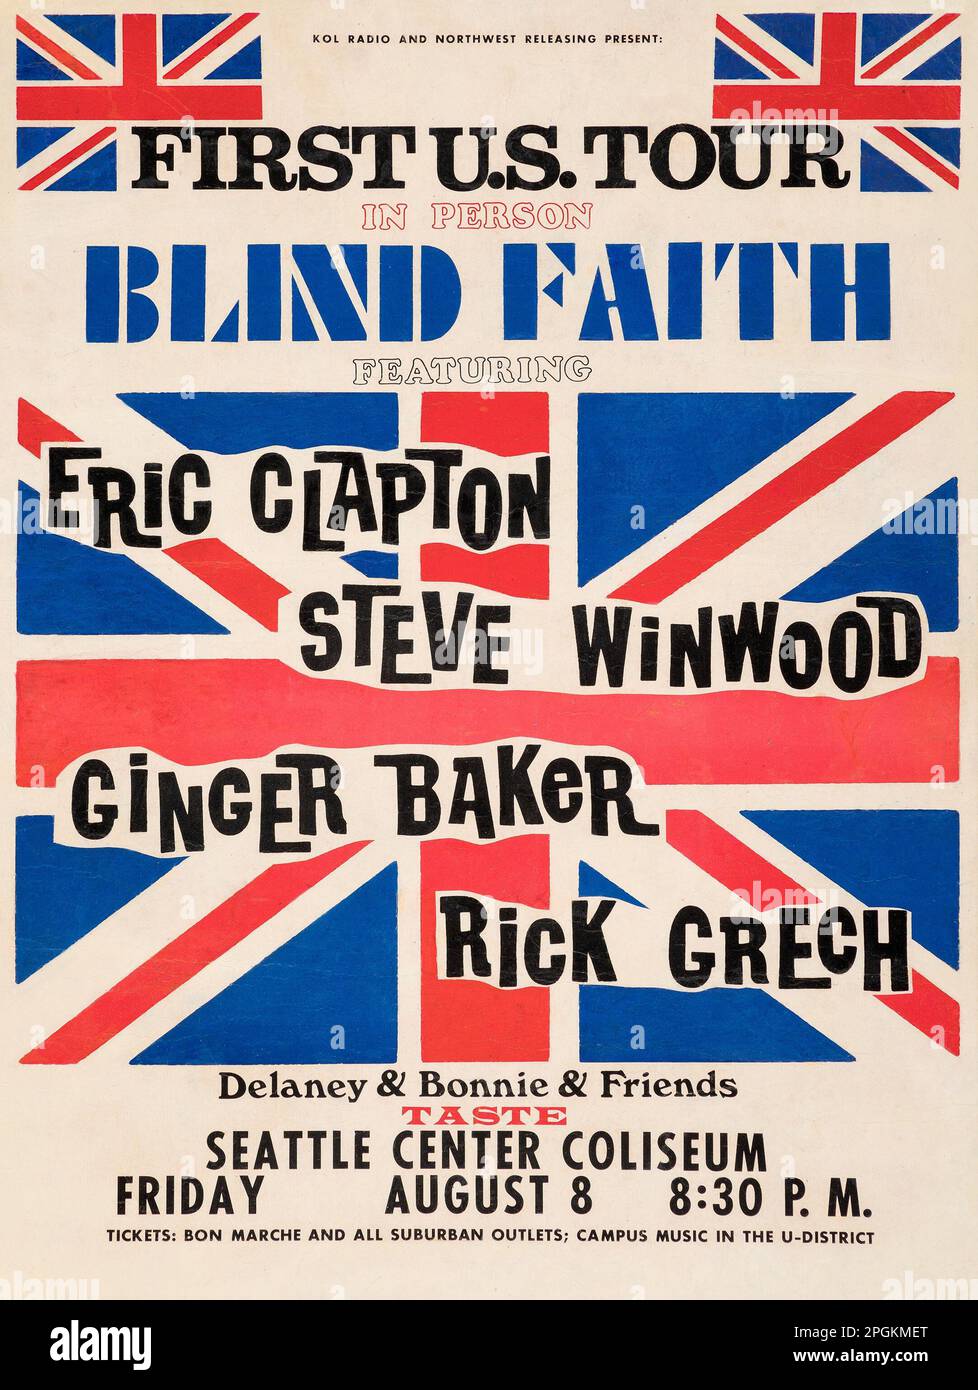 Blind Faith Feat Eric Clapton Steve Winwood Ginger Baker Rick Grech 1969 Seattle Center